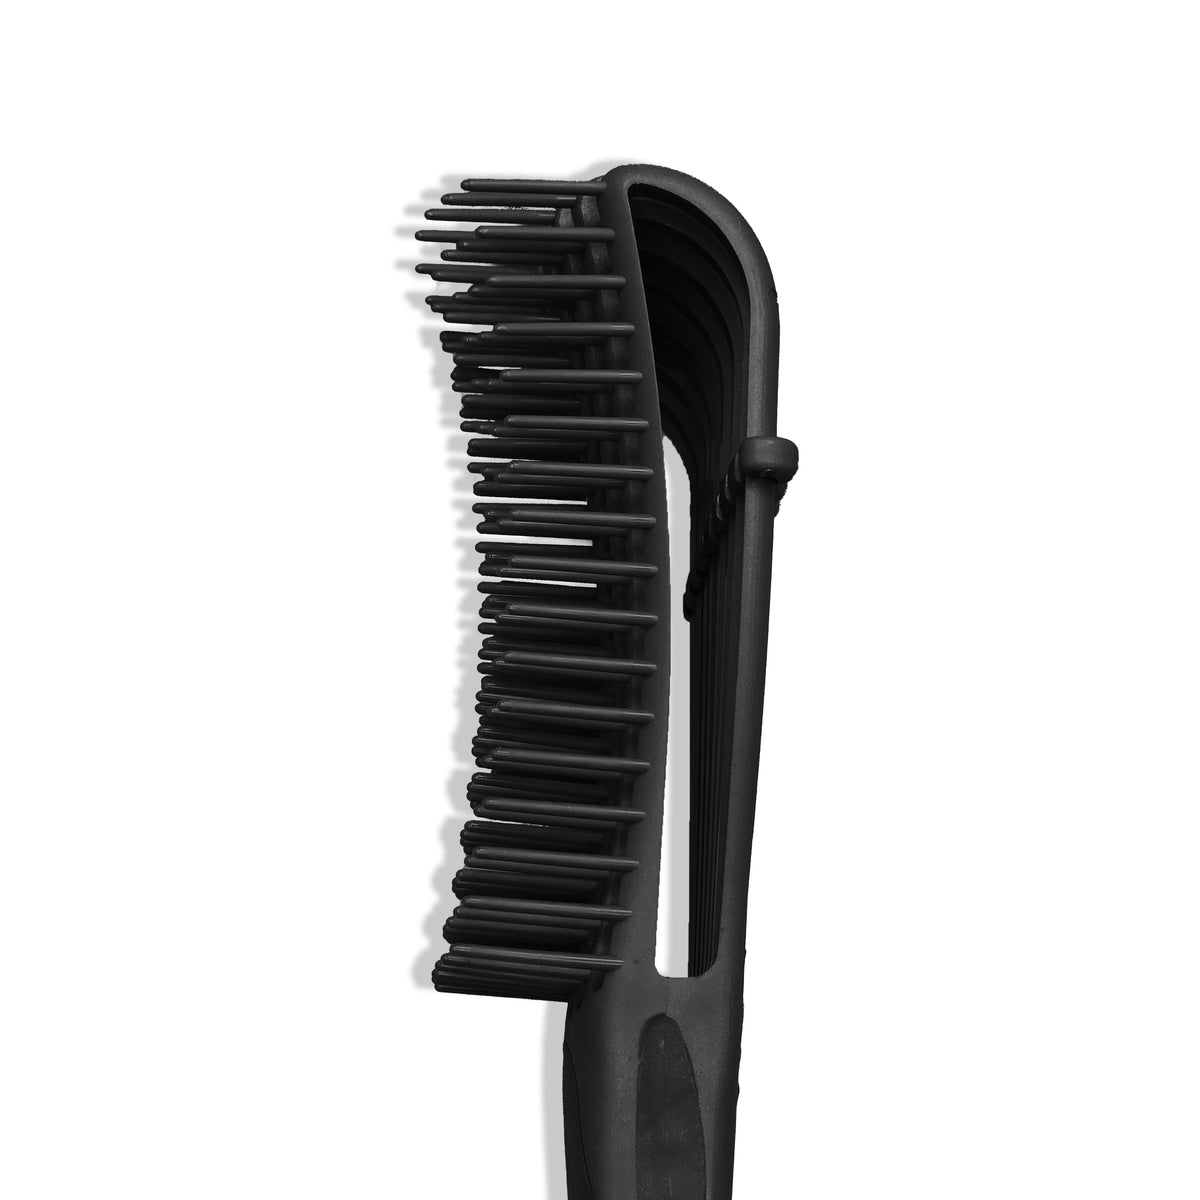 Colorido negro - Cepillo desenredante flexible - Diosa negra (negro)